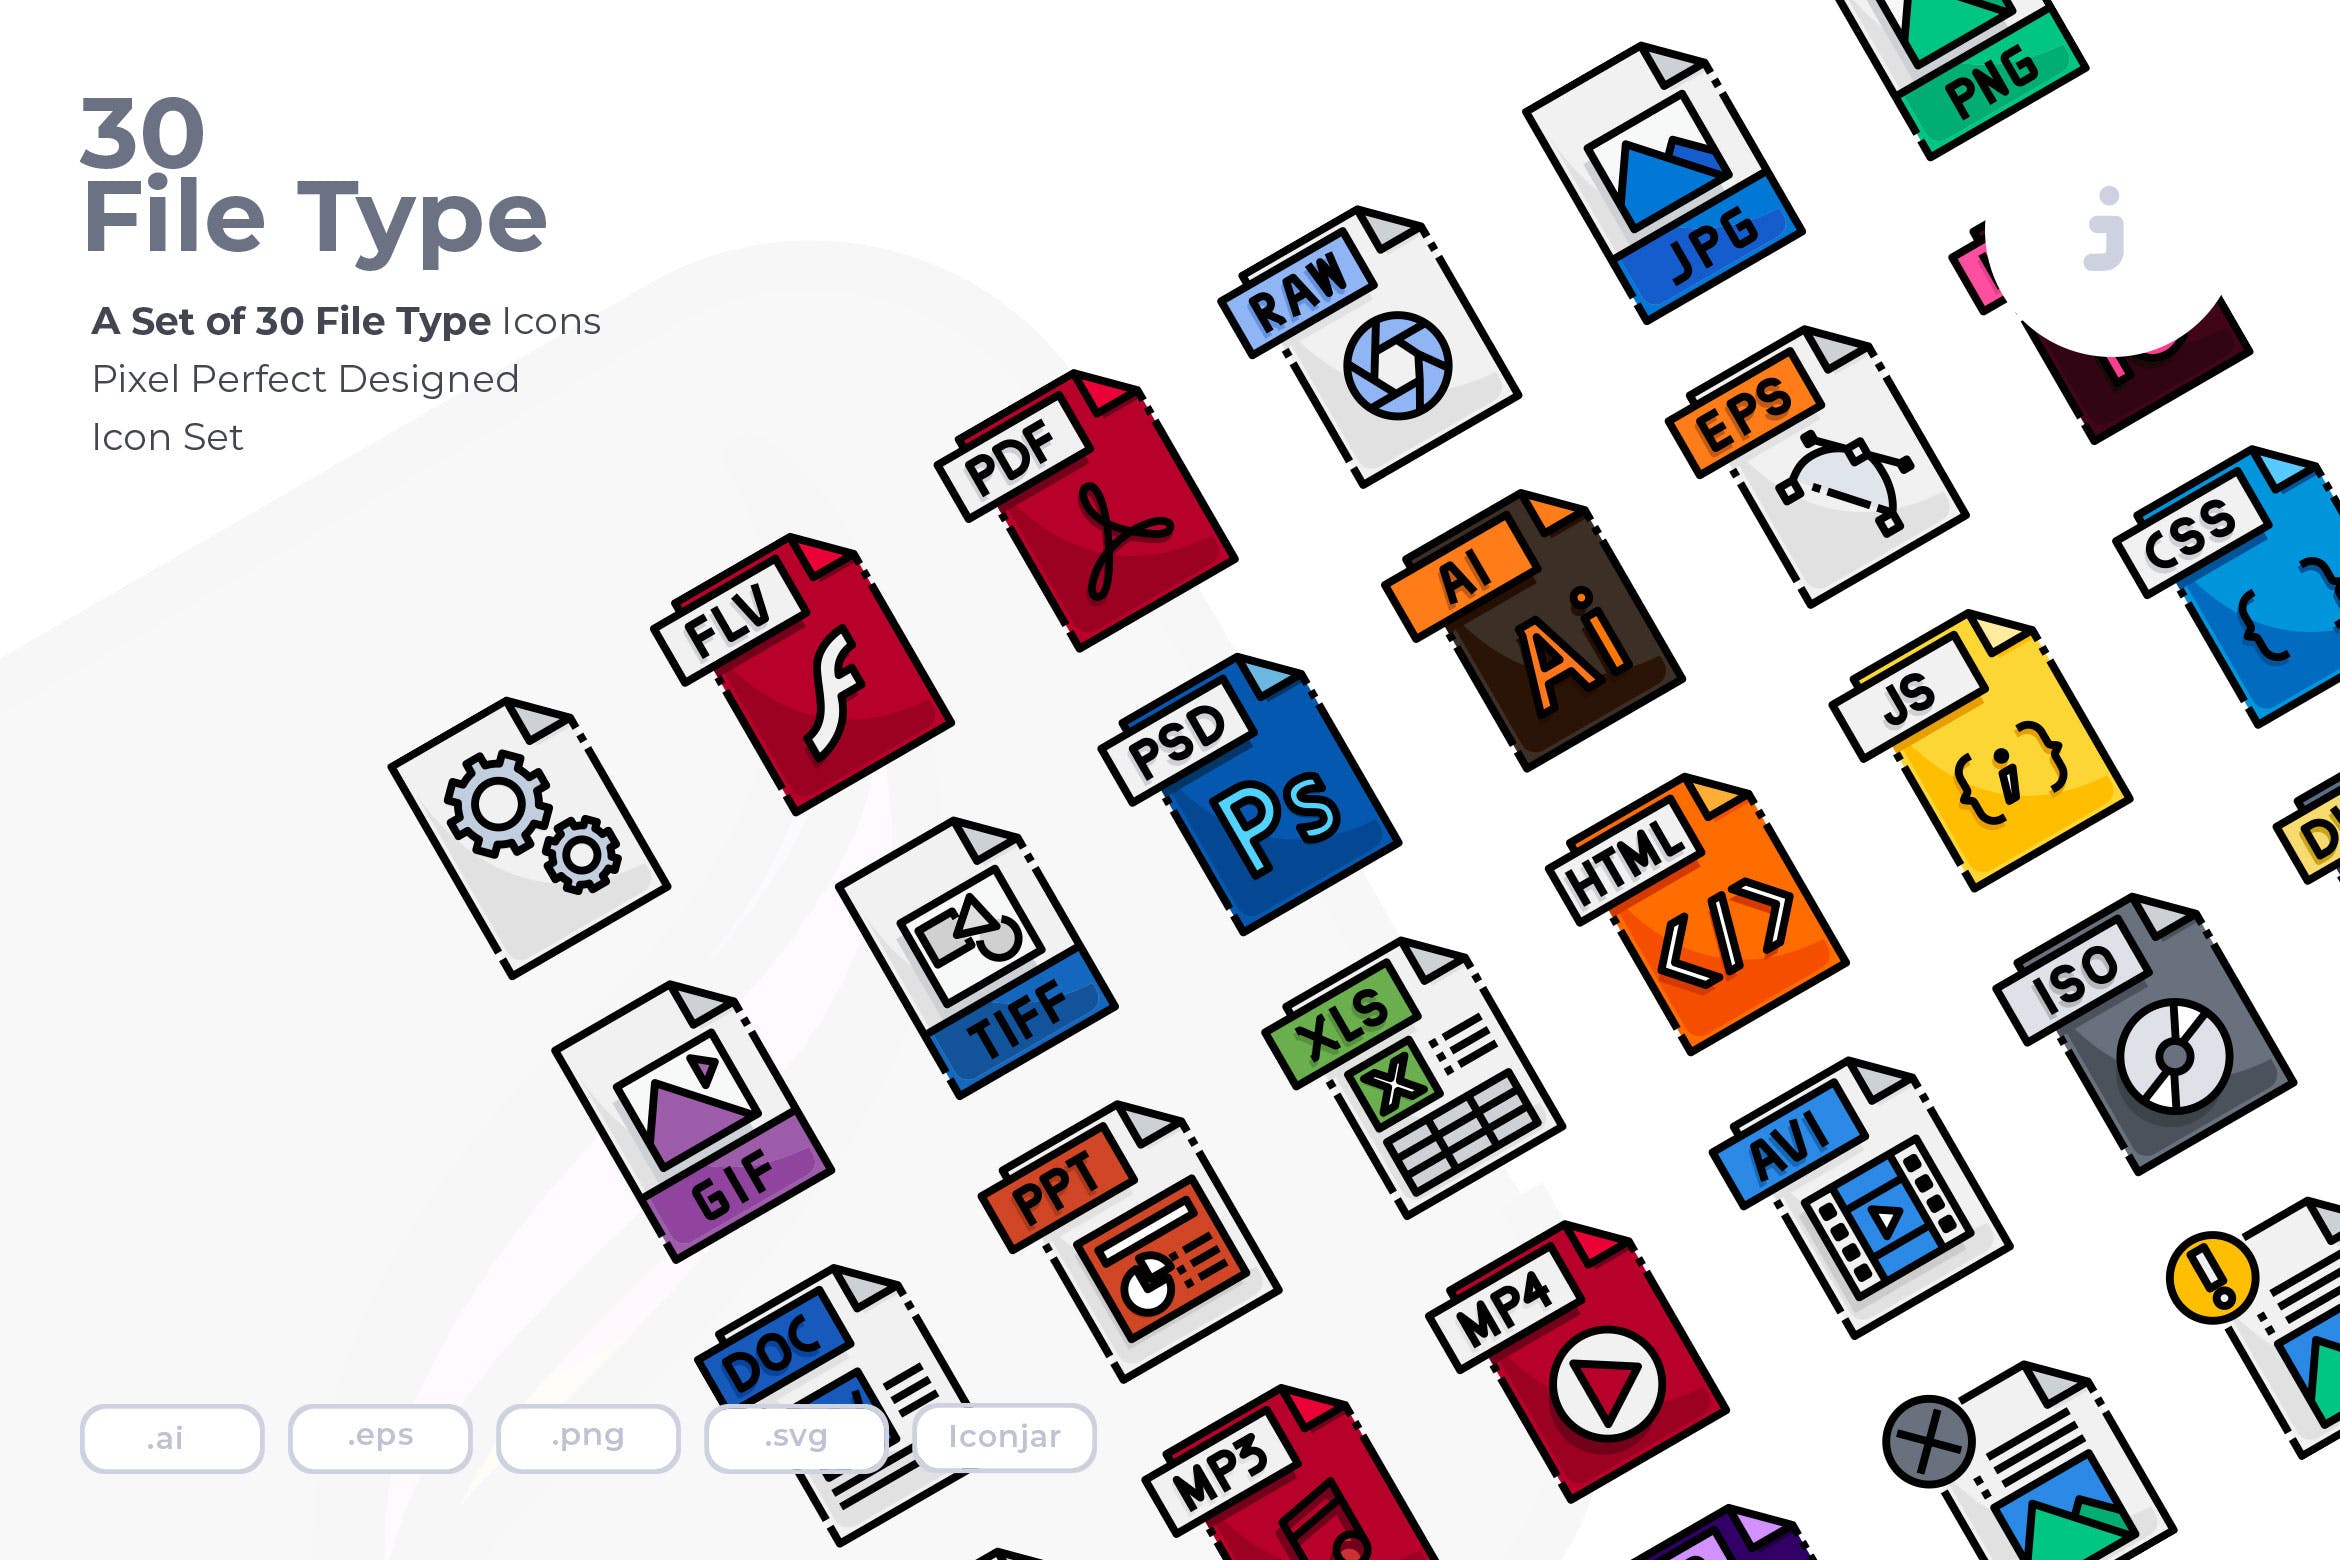 30种文件格式矢量第一素材精选图标 30 File Type Icons插图